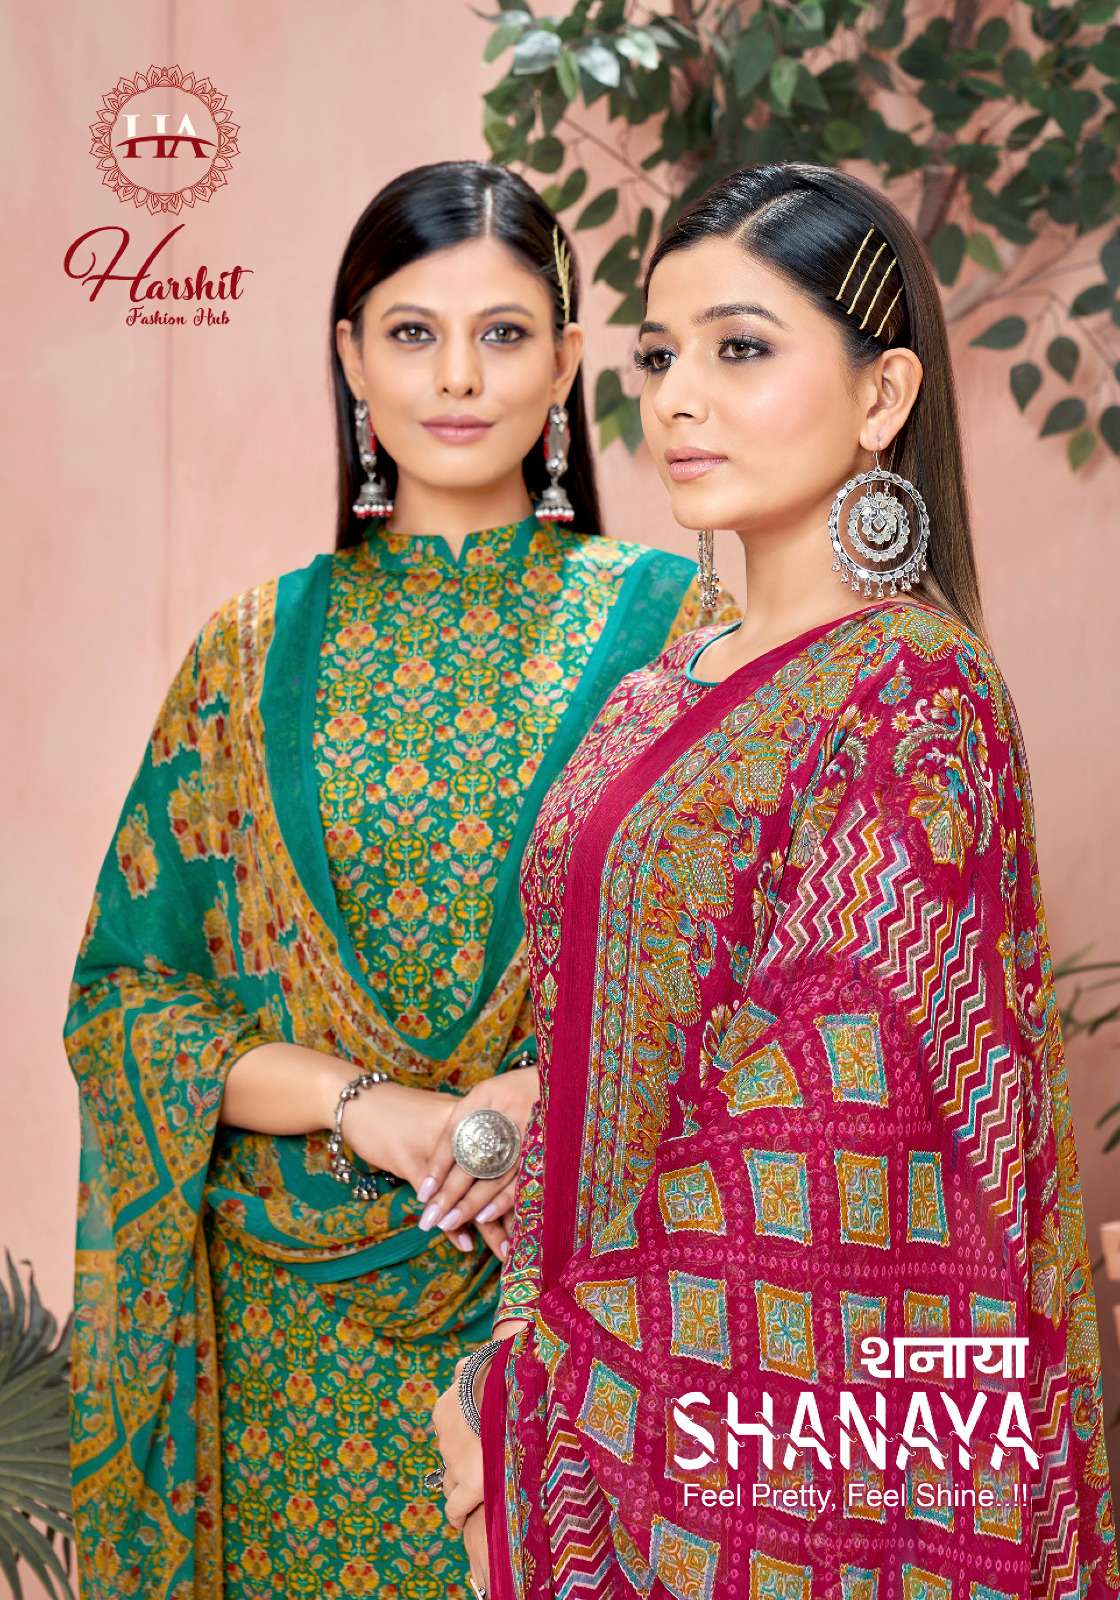 shanaya harshit fashion hub by alok suit jaam print salwar kameez material